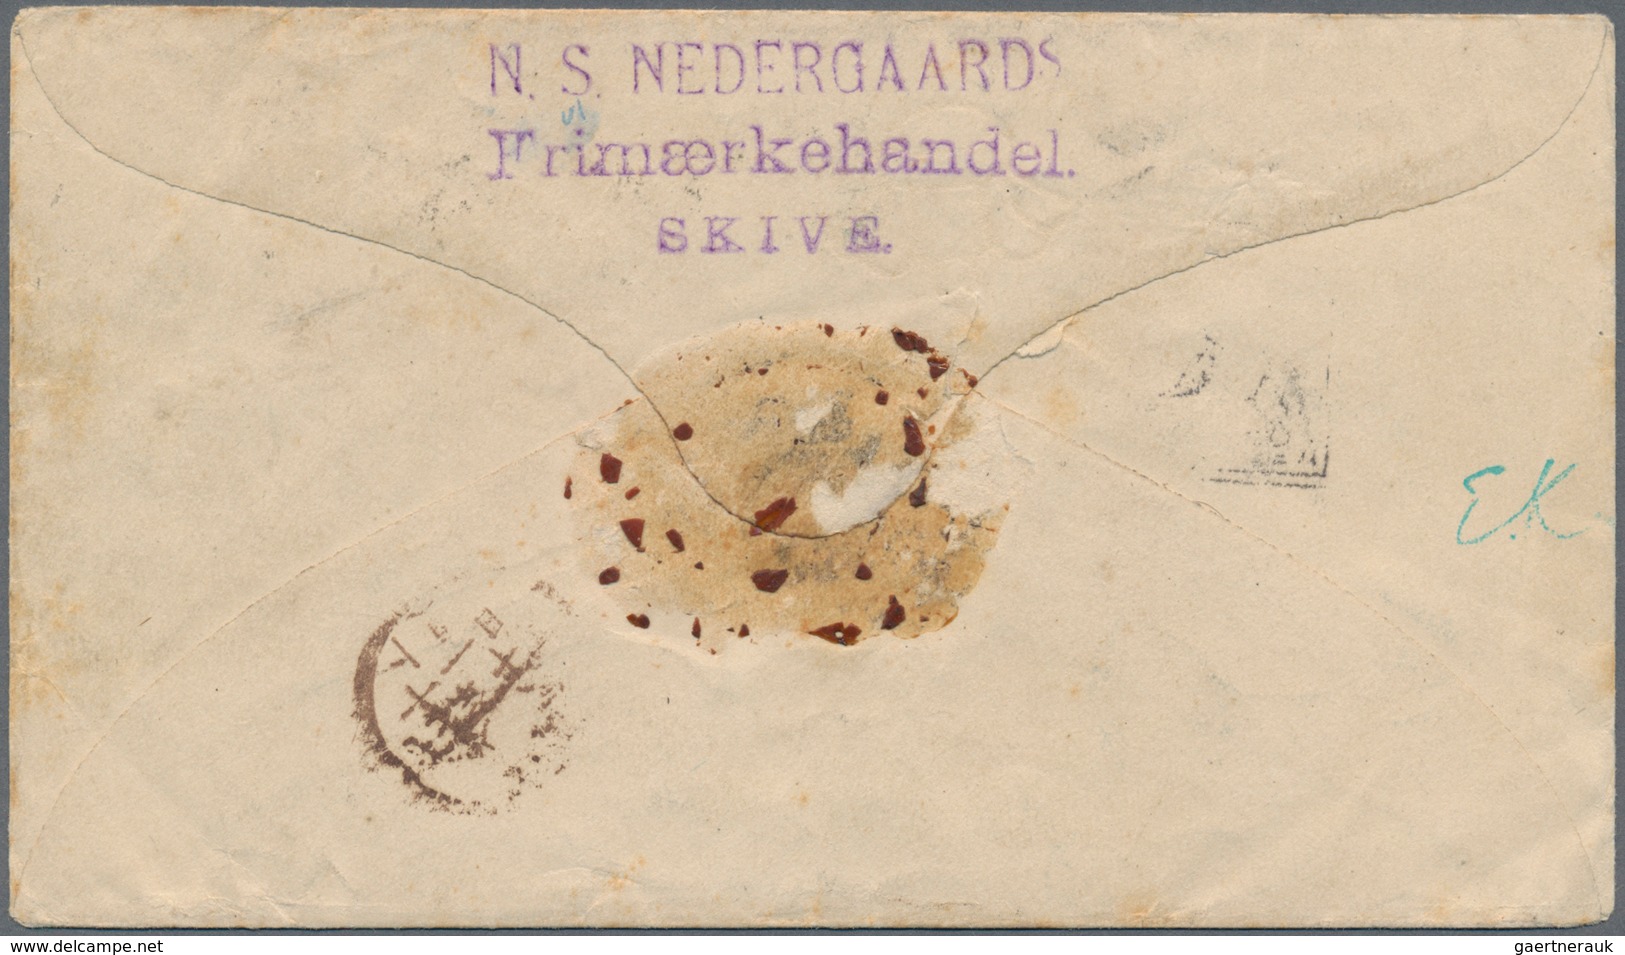 Dänemark - Ganzsachen: 1894 Destination JAPAN: Postal Stationery Envelope 4 øre Blue Used Registered - Postal Stationery